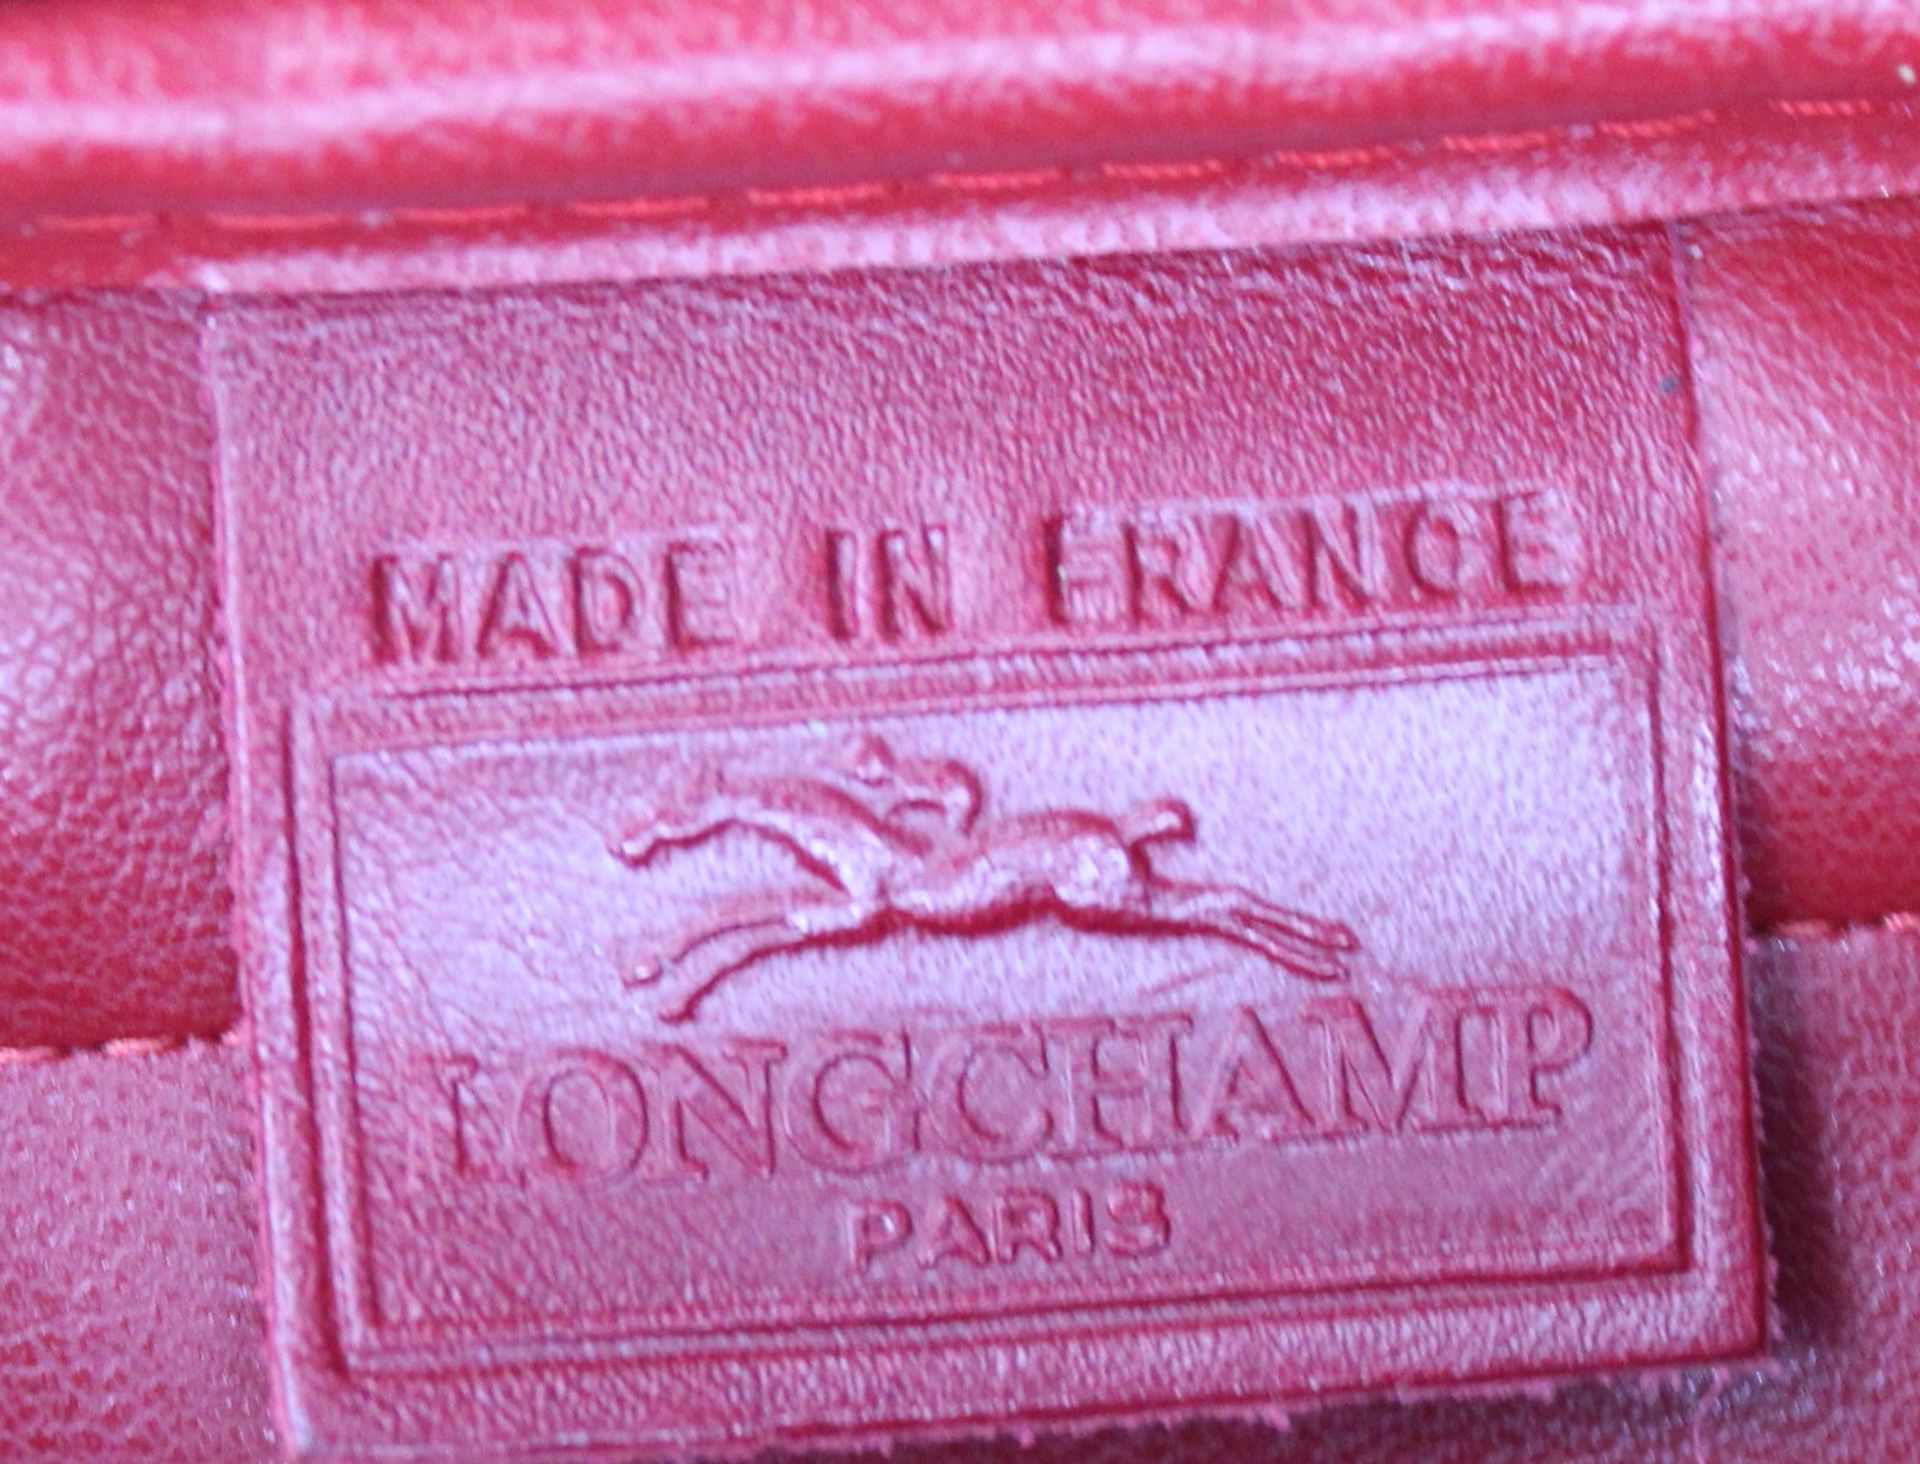 kl. Handtasche, rotes Leder, Longchamp, leichte Tragespuren, ca. 13 x 17cm. - Bild 6 aus 6